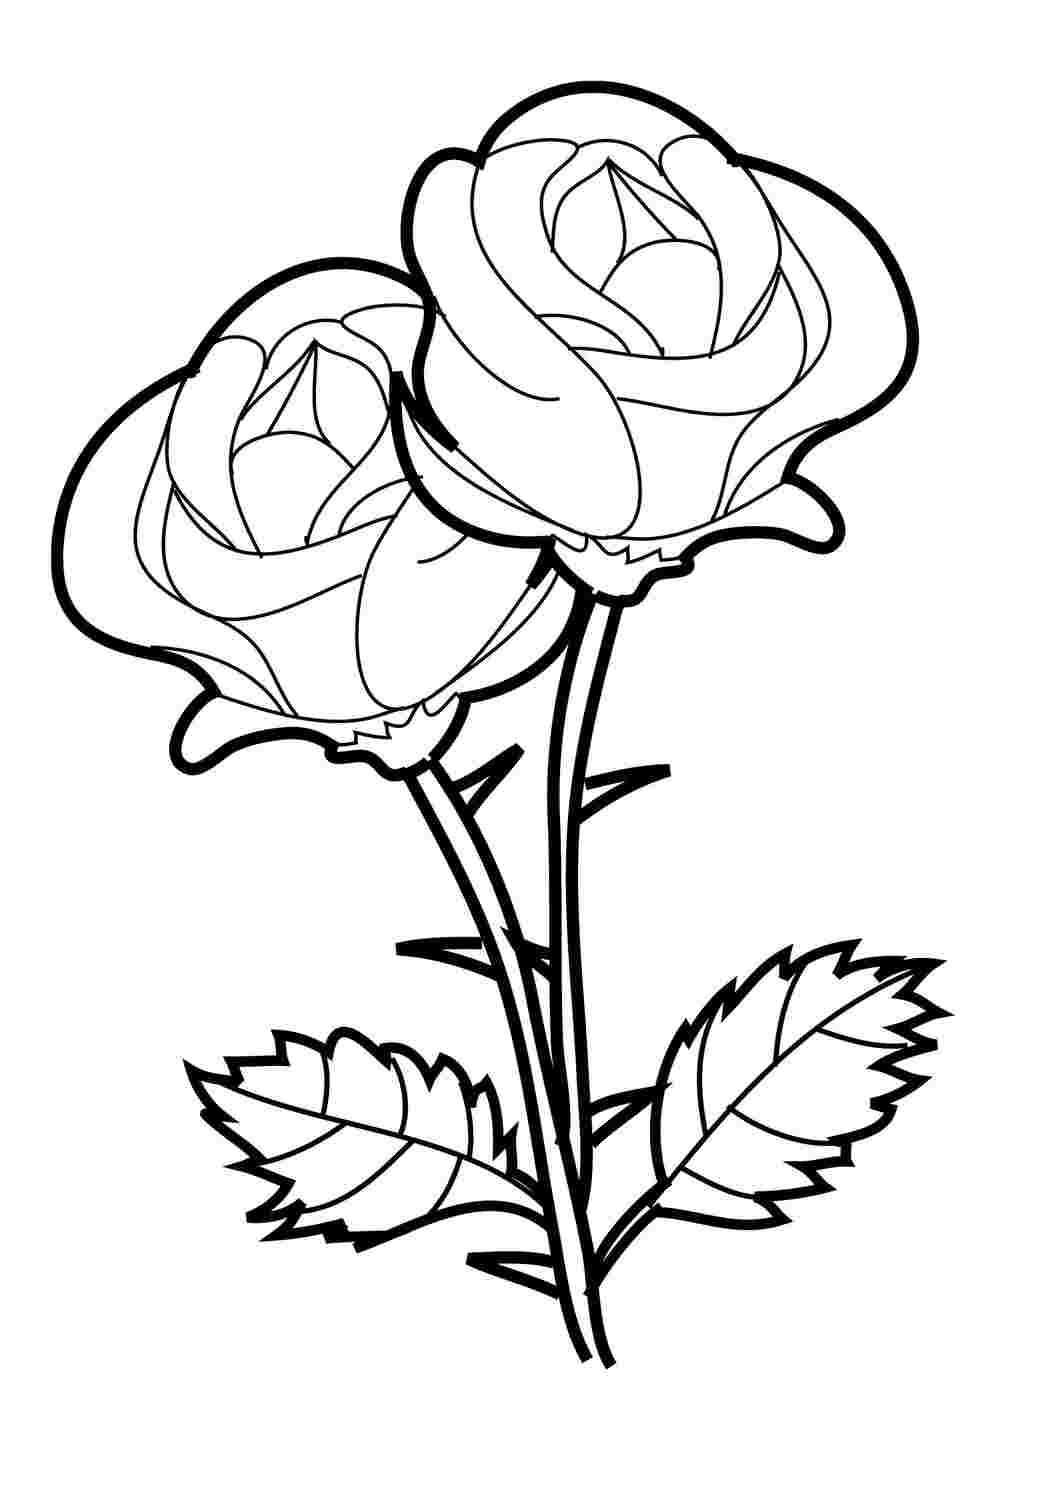 Раскраски, Цветы из роз, цветы букет из роз, шиповидные розы, Букет роз,Как нарисовать букет роз карандашом поэтапно, Русалочка с венком из роз,Китти балерина в окружении роз, Красивейший букет из роз